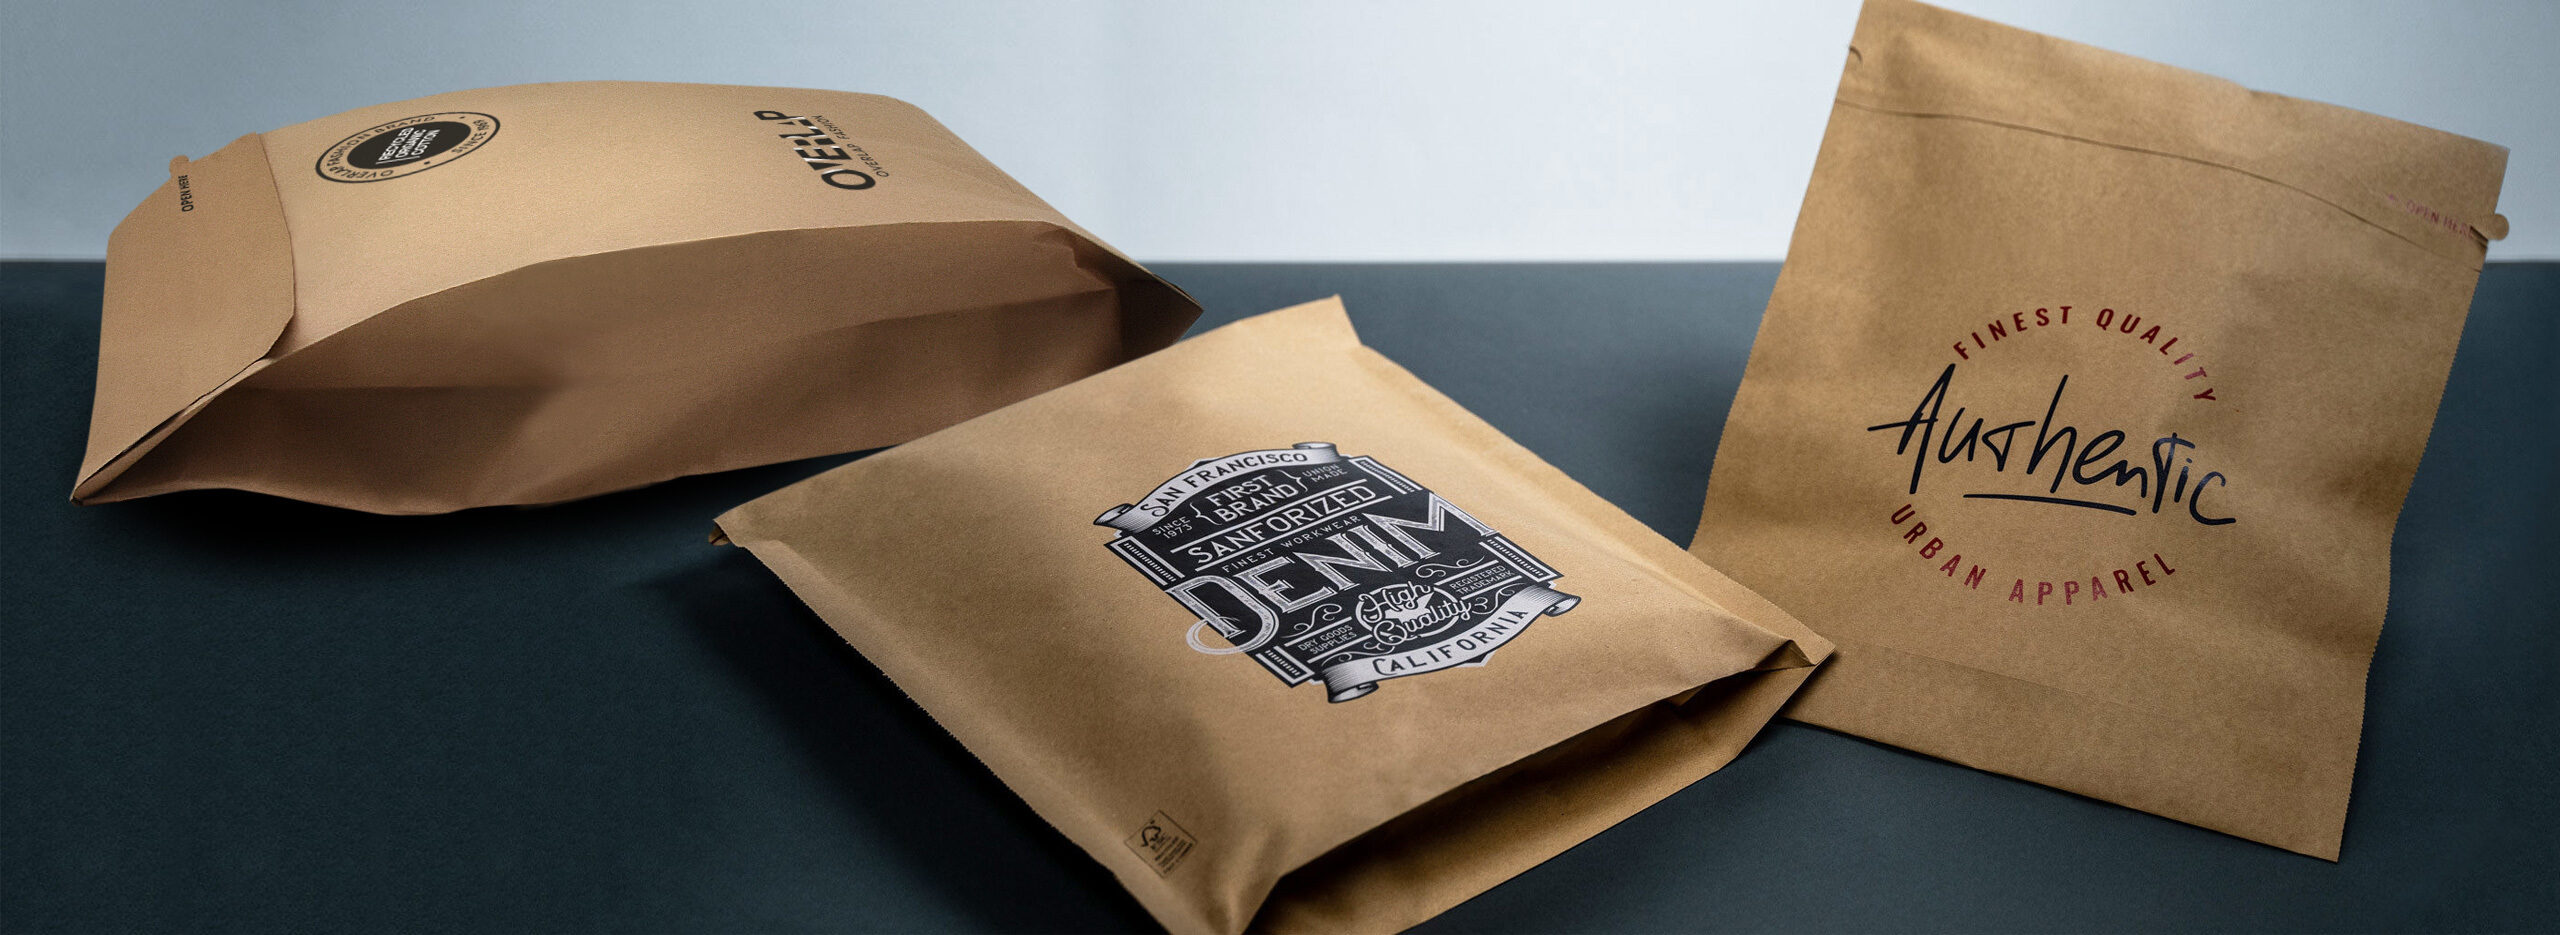 SEND BAG - Die nachhaltigen Versandtaschen und Versandbeutel von WEBER Verpackungen